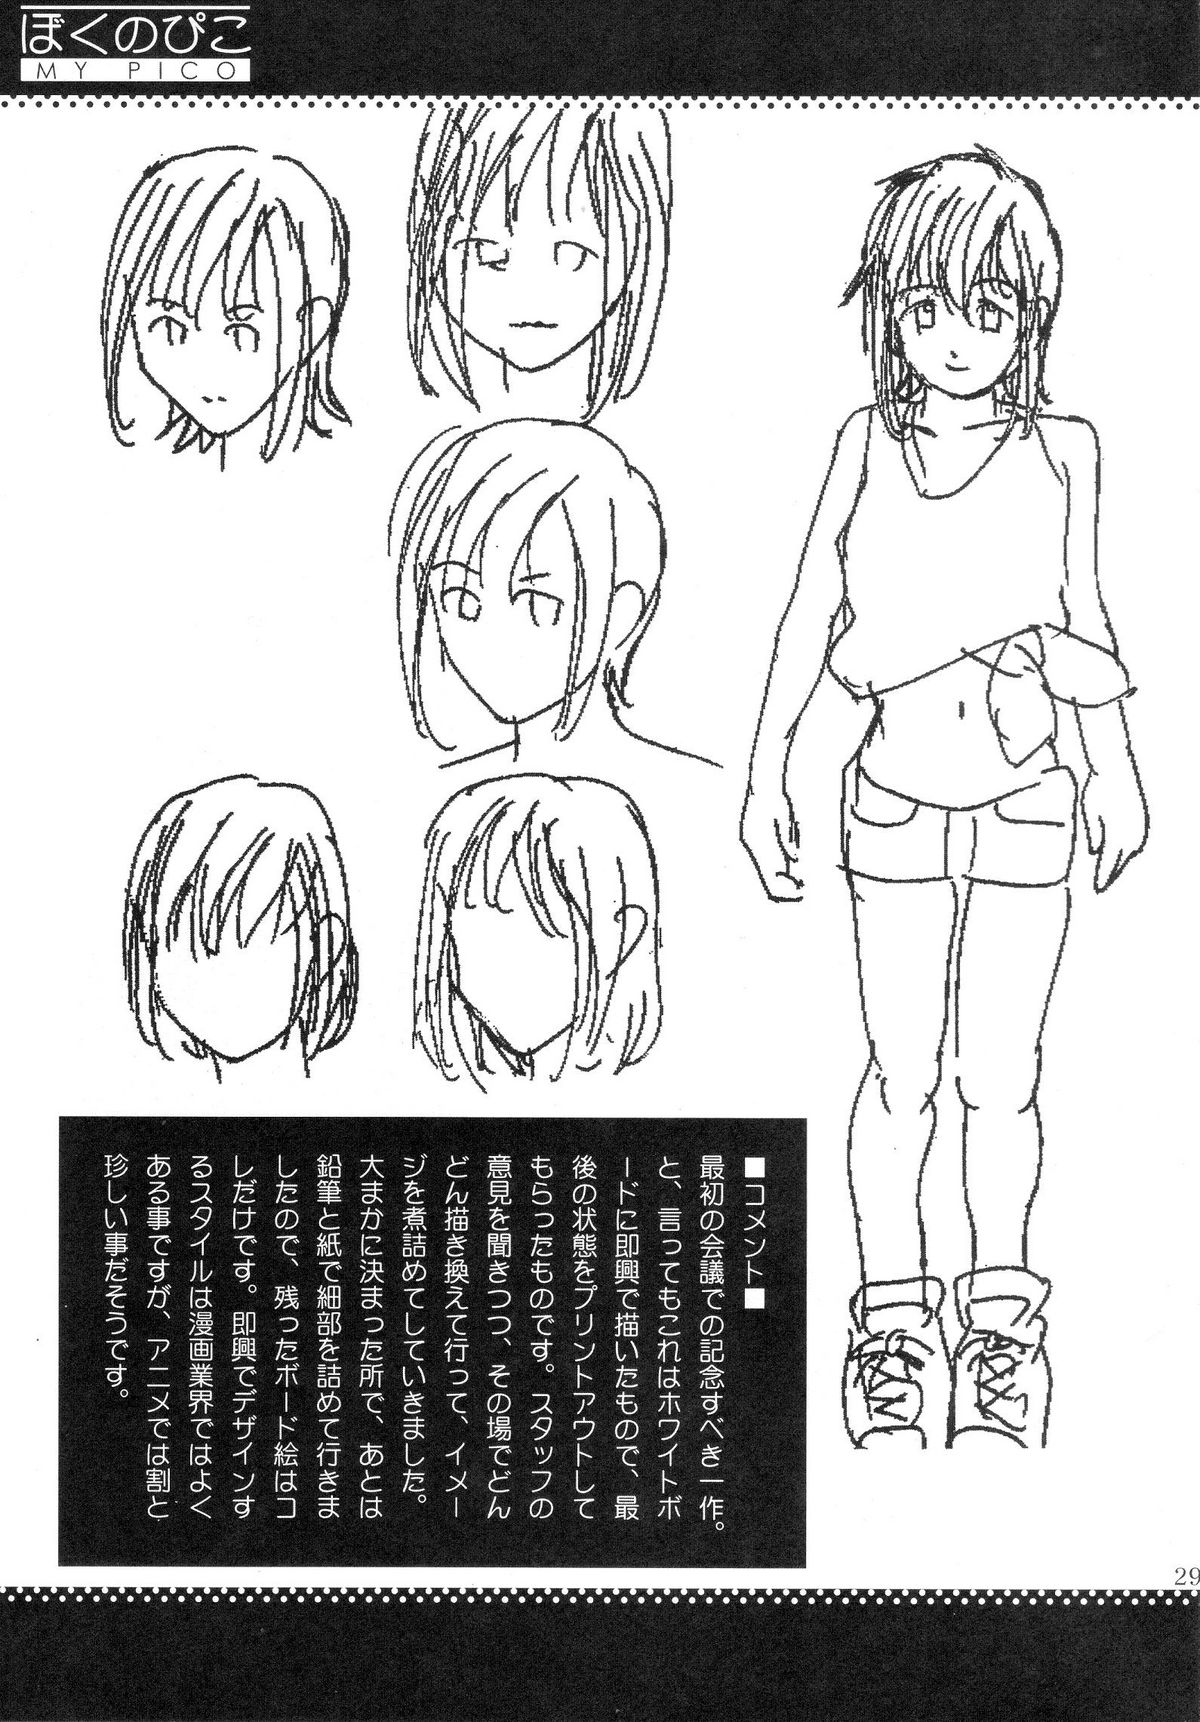 (COMIC1) [Saigado] Boku no Pico Comic + Koushiki Character Genanshuu (Boku no Pico) page 27 full